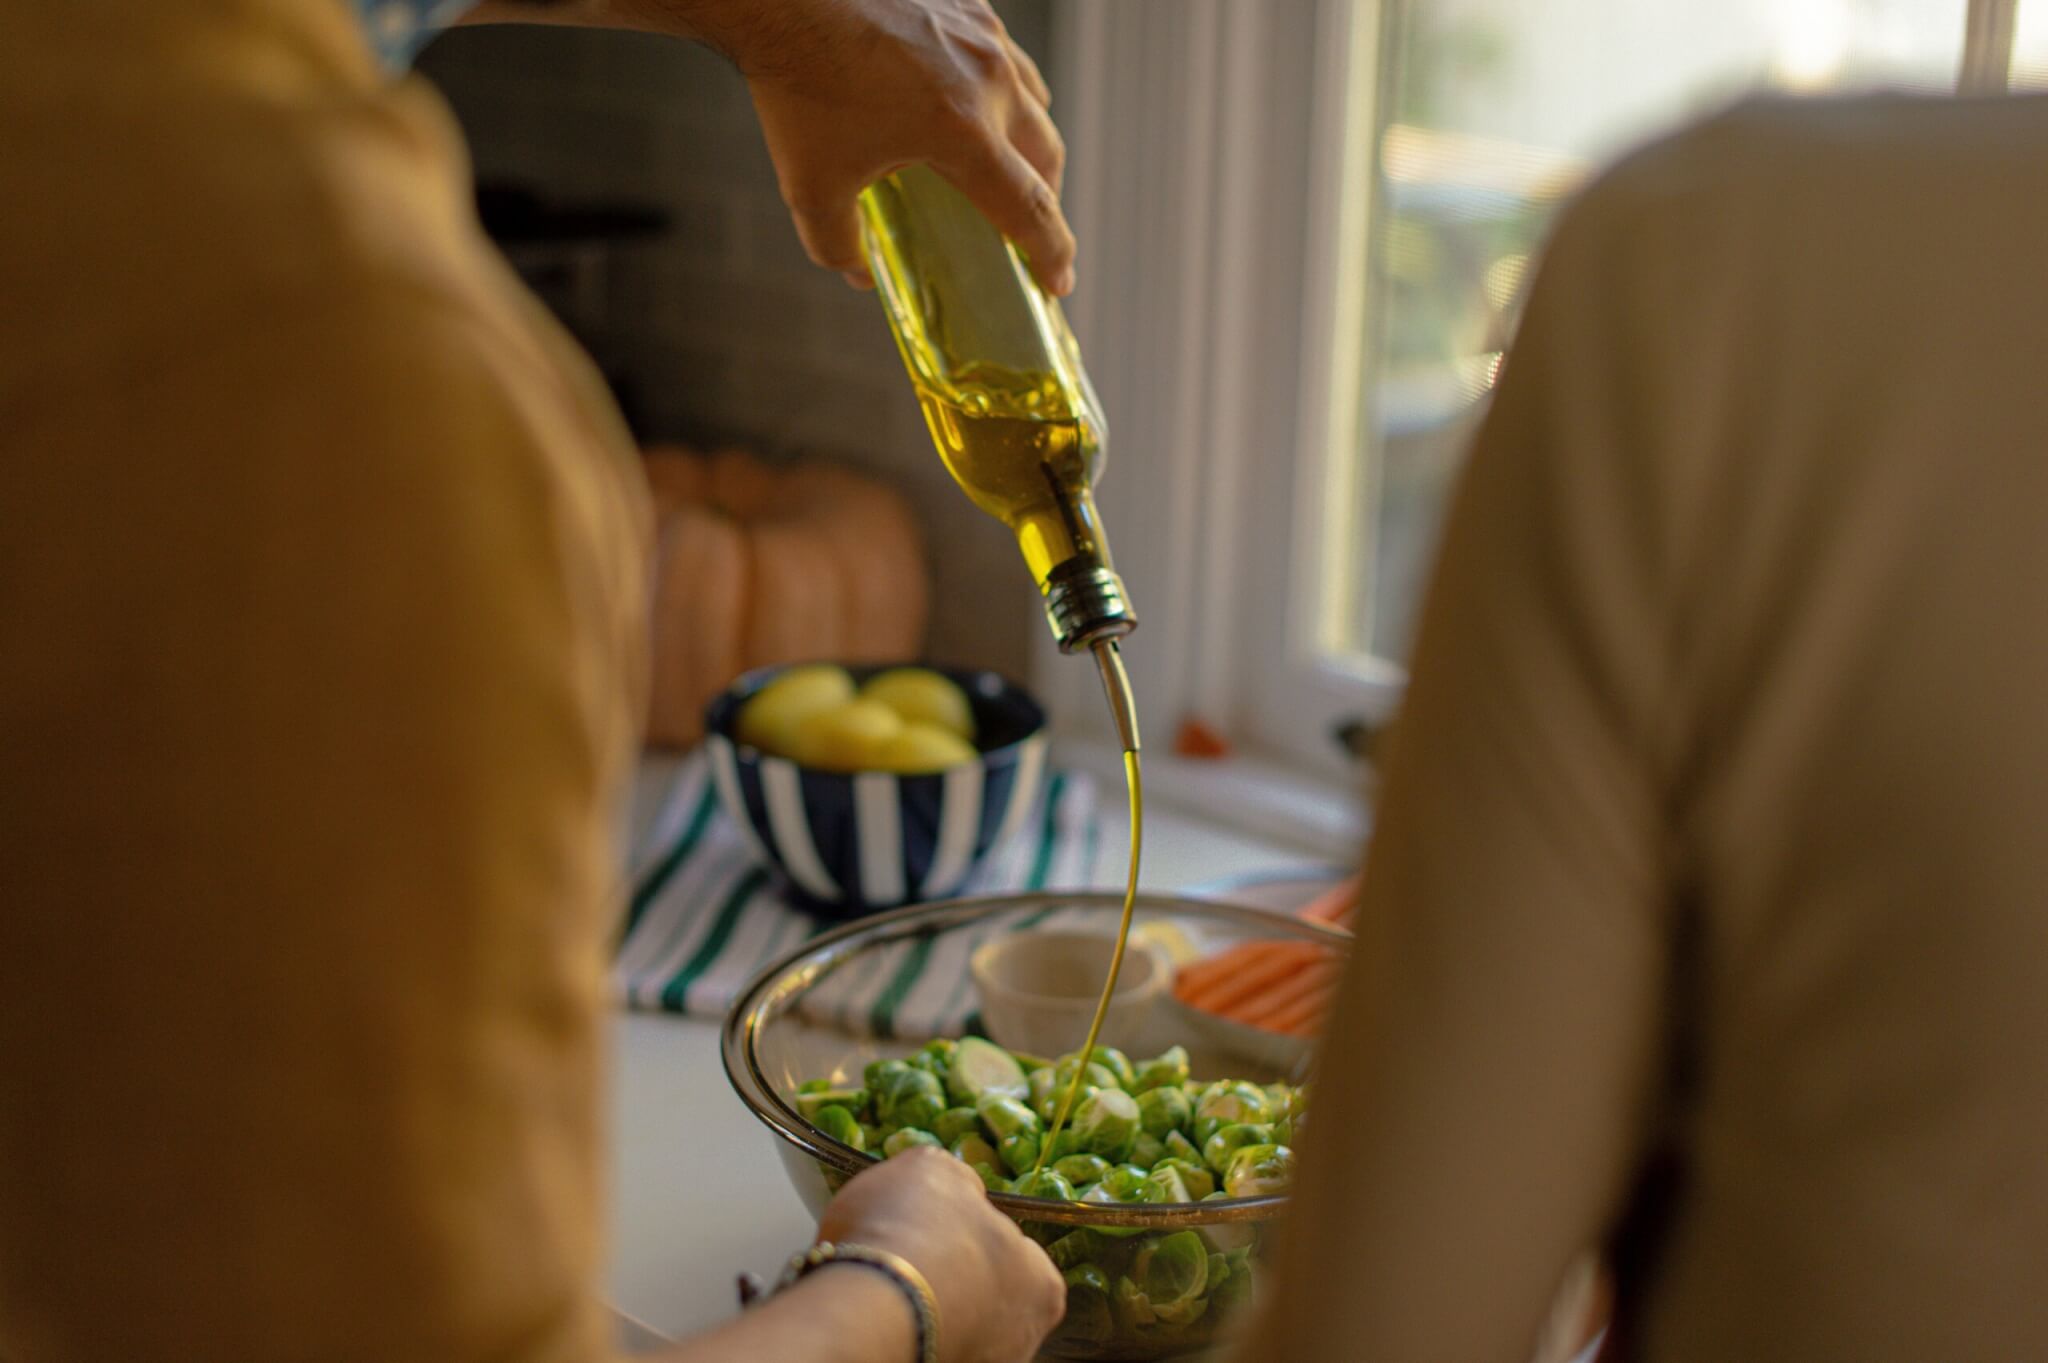 Olive oil in salad